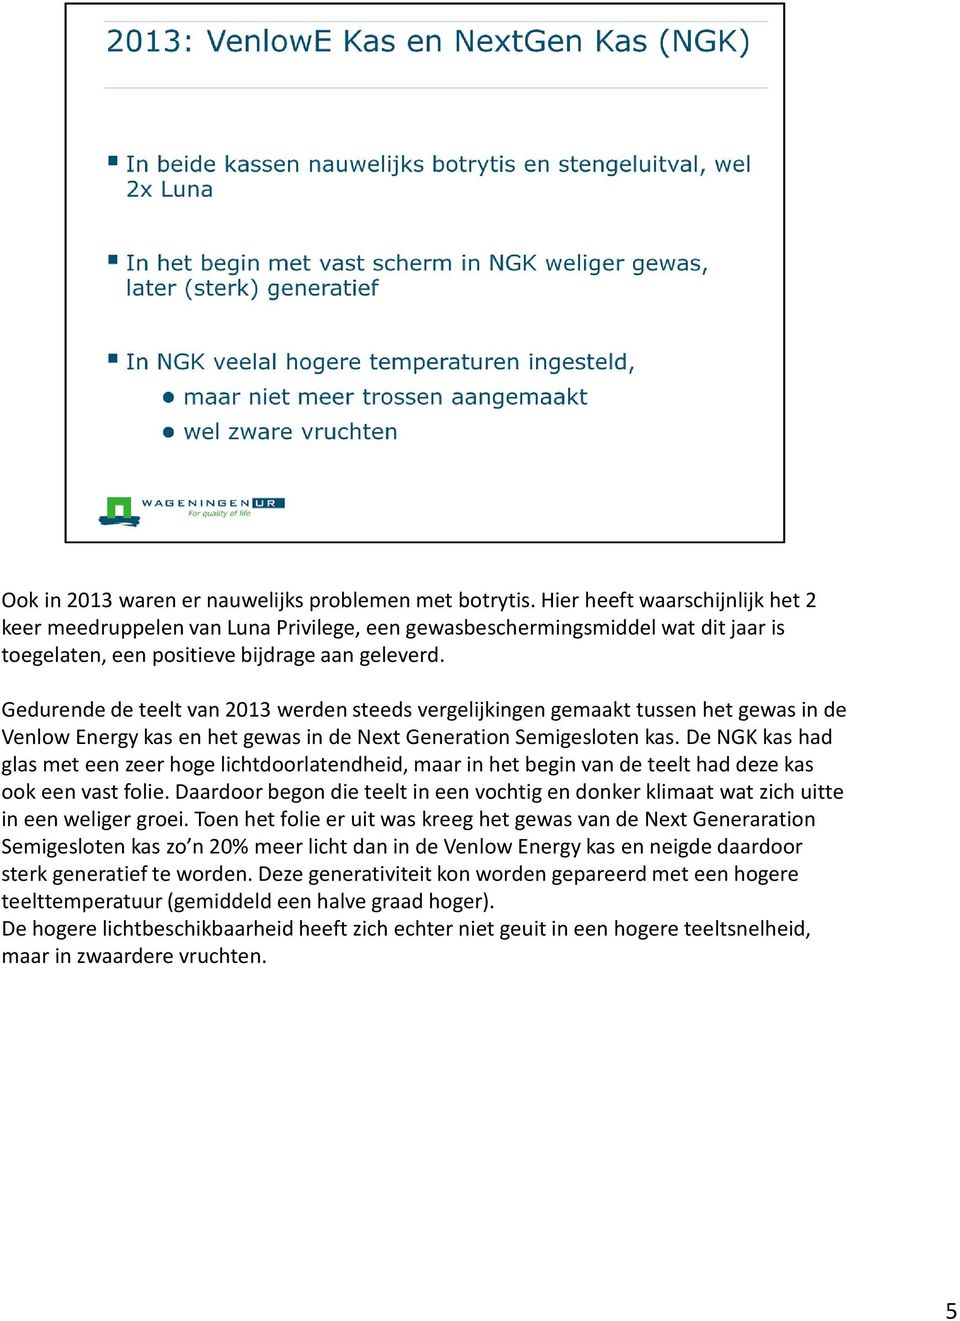 Gedurende de teelt van 2013 werden steeds vergelijkingen gemaakt tussen het gewas in de VenlowEnergy kas en het gewas in de Next GenerationSemigesloten kas.